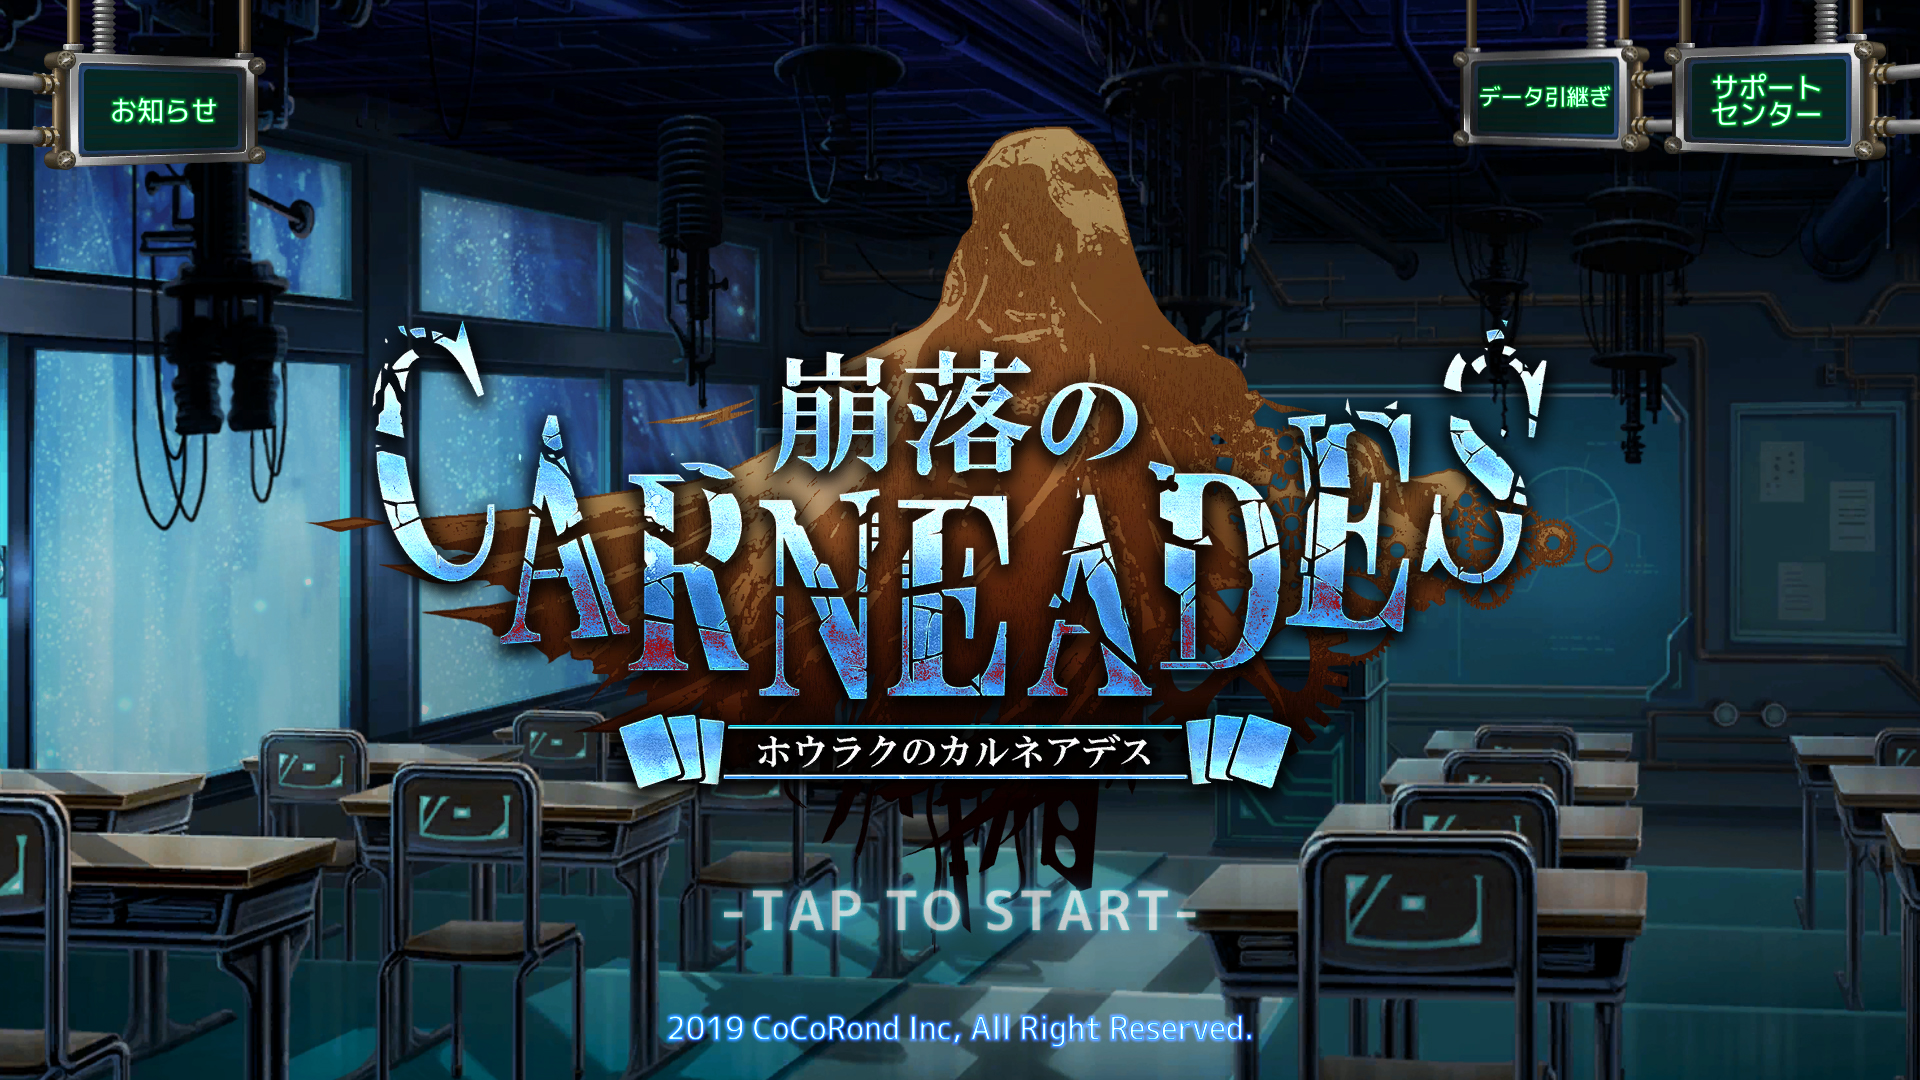 Screenshot 1 of Houraku no Carneade 1.0.16